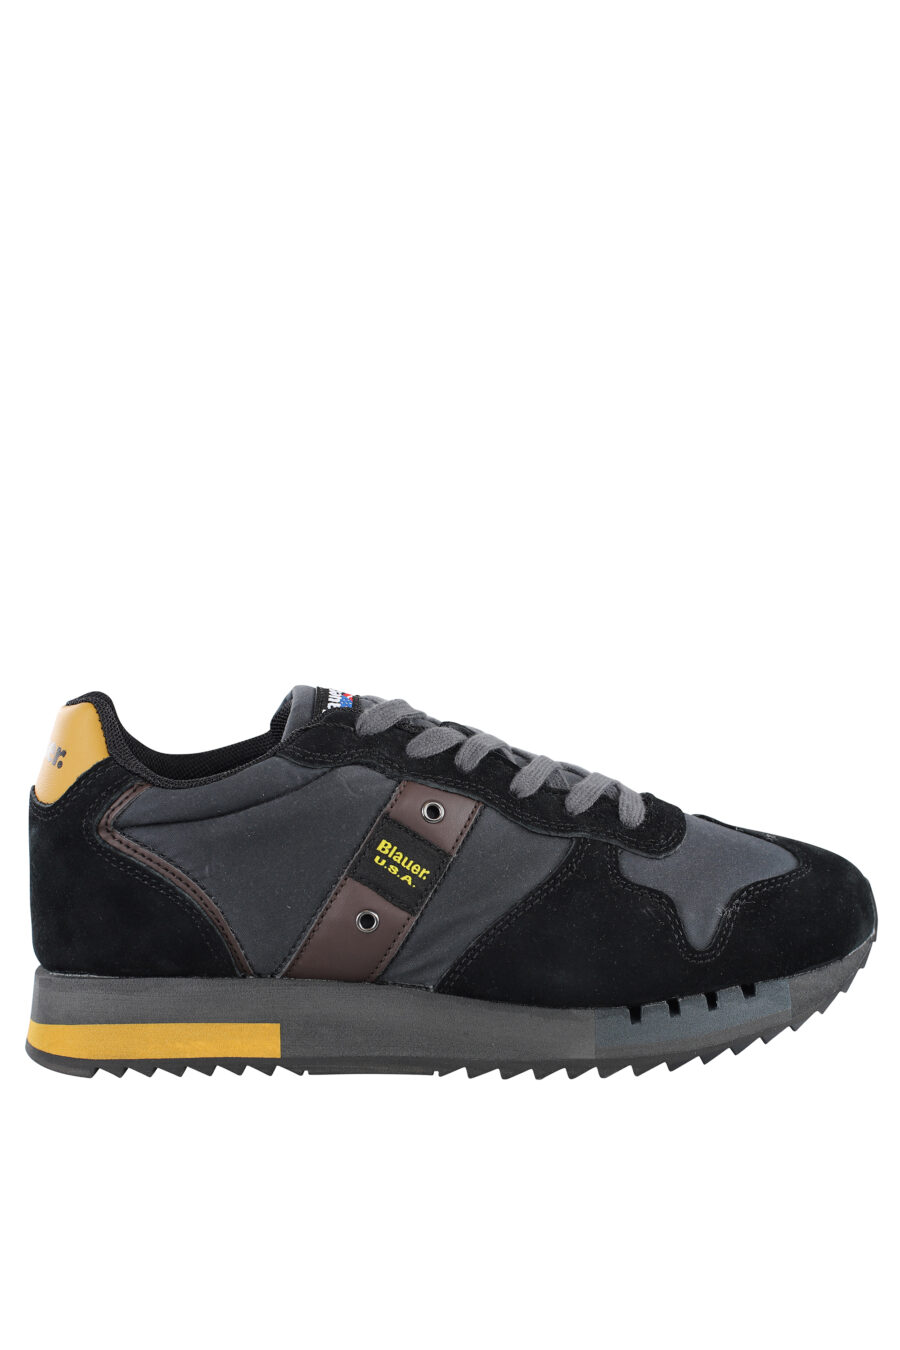 Zapatillas "queen" negras con detalles amarillos y logo - IMG 7083